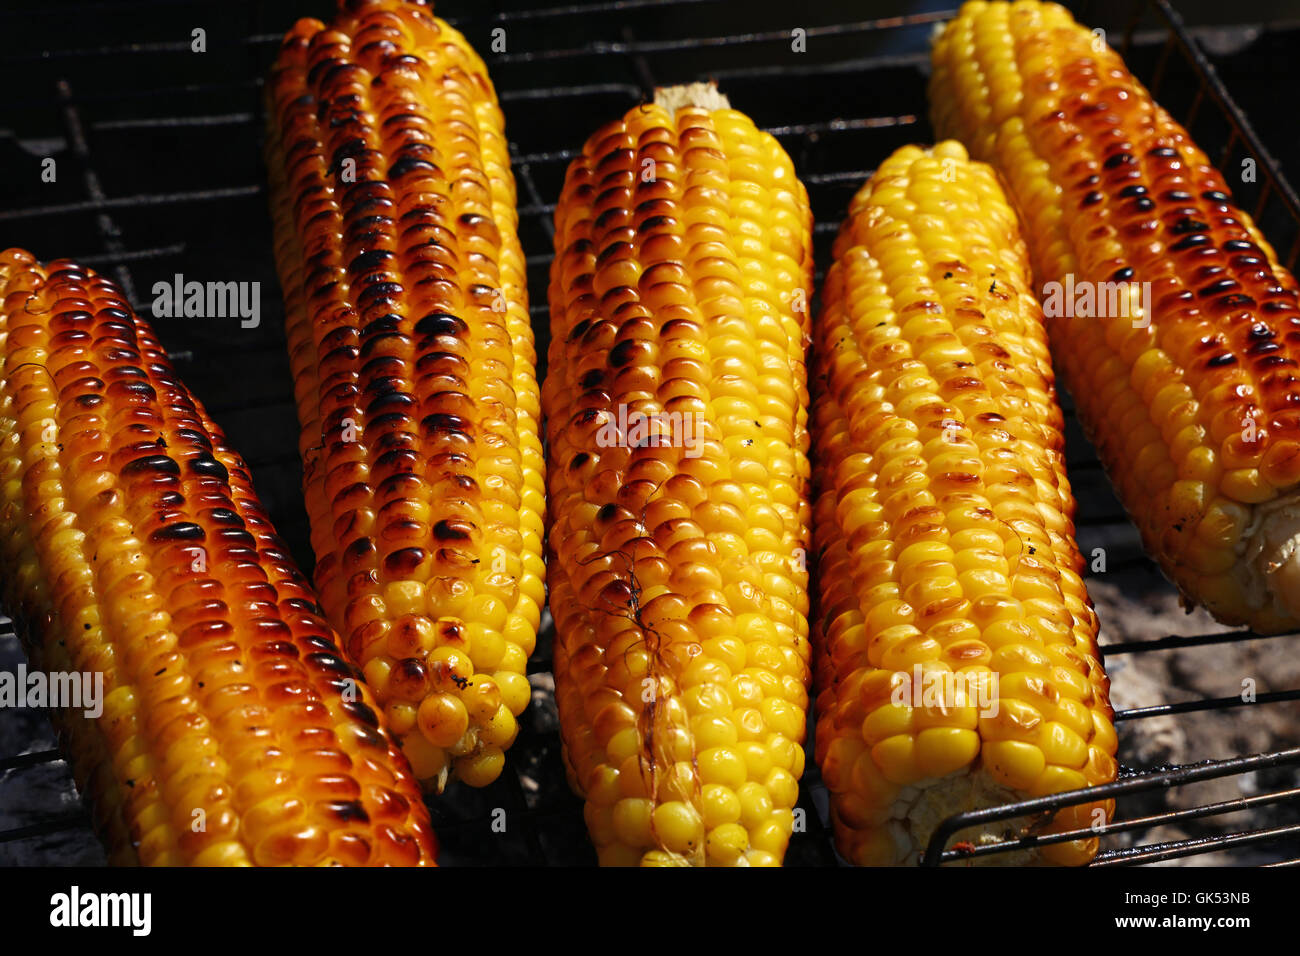 La cucina di più fresca marrone giallo dorato tutoli di mais su open air barbecue grill, close up Foto Stock